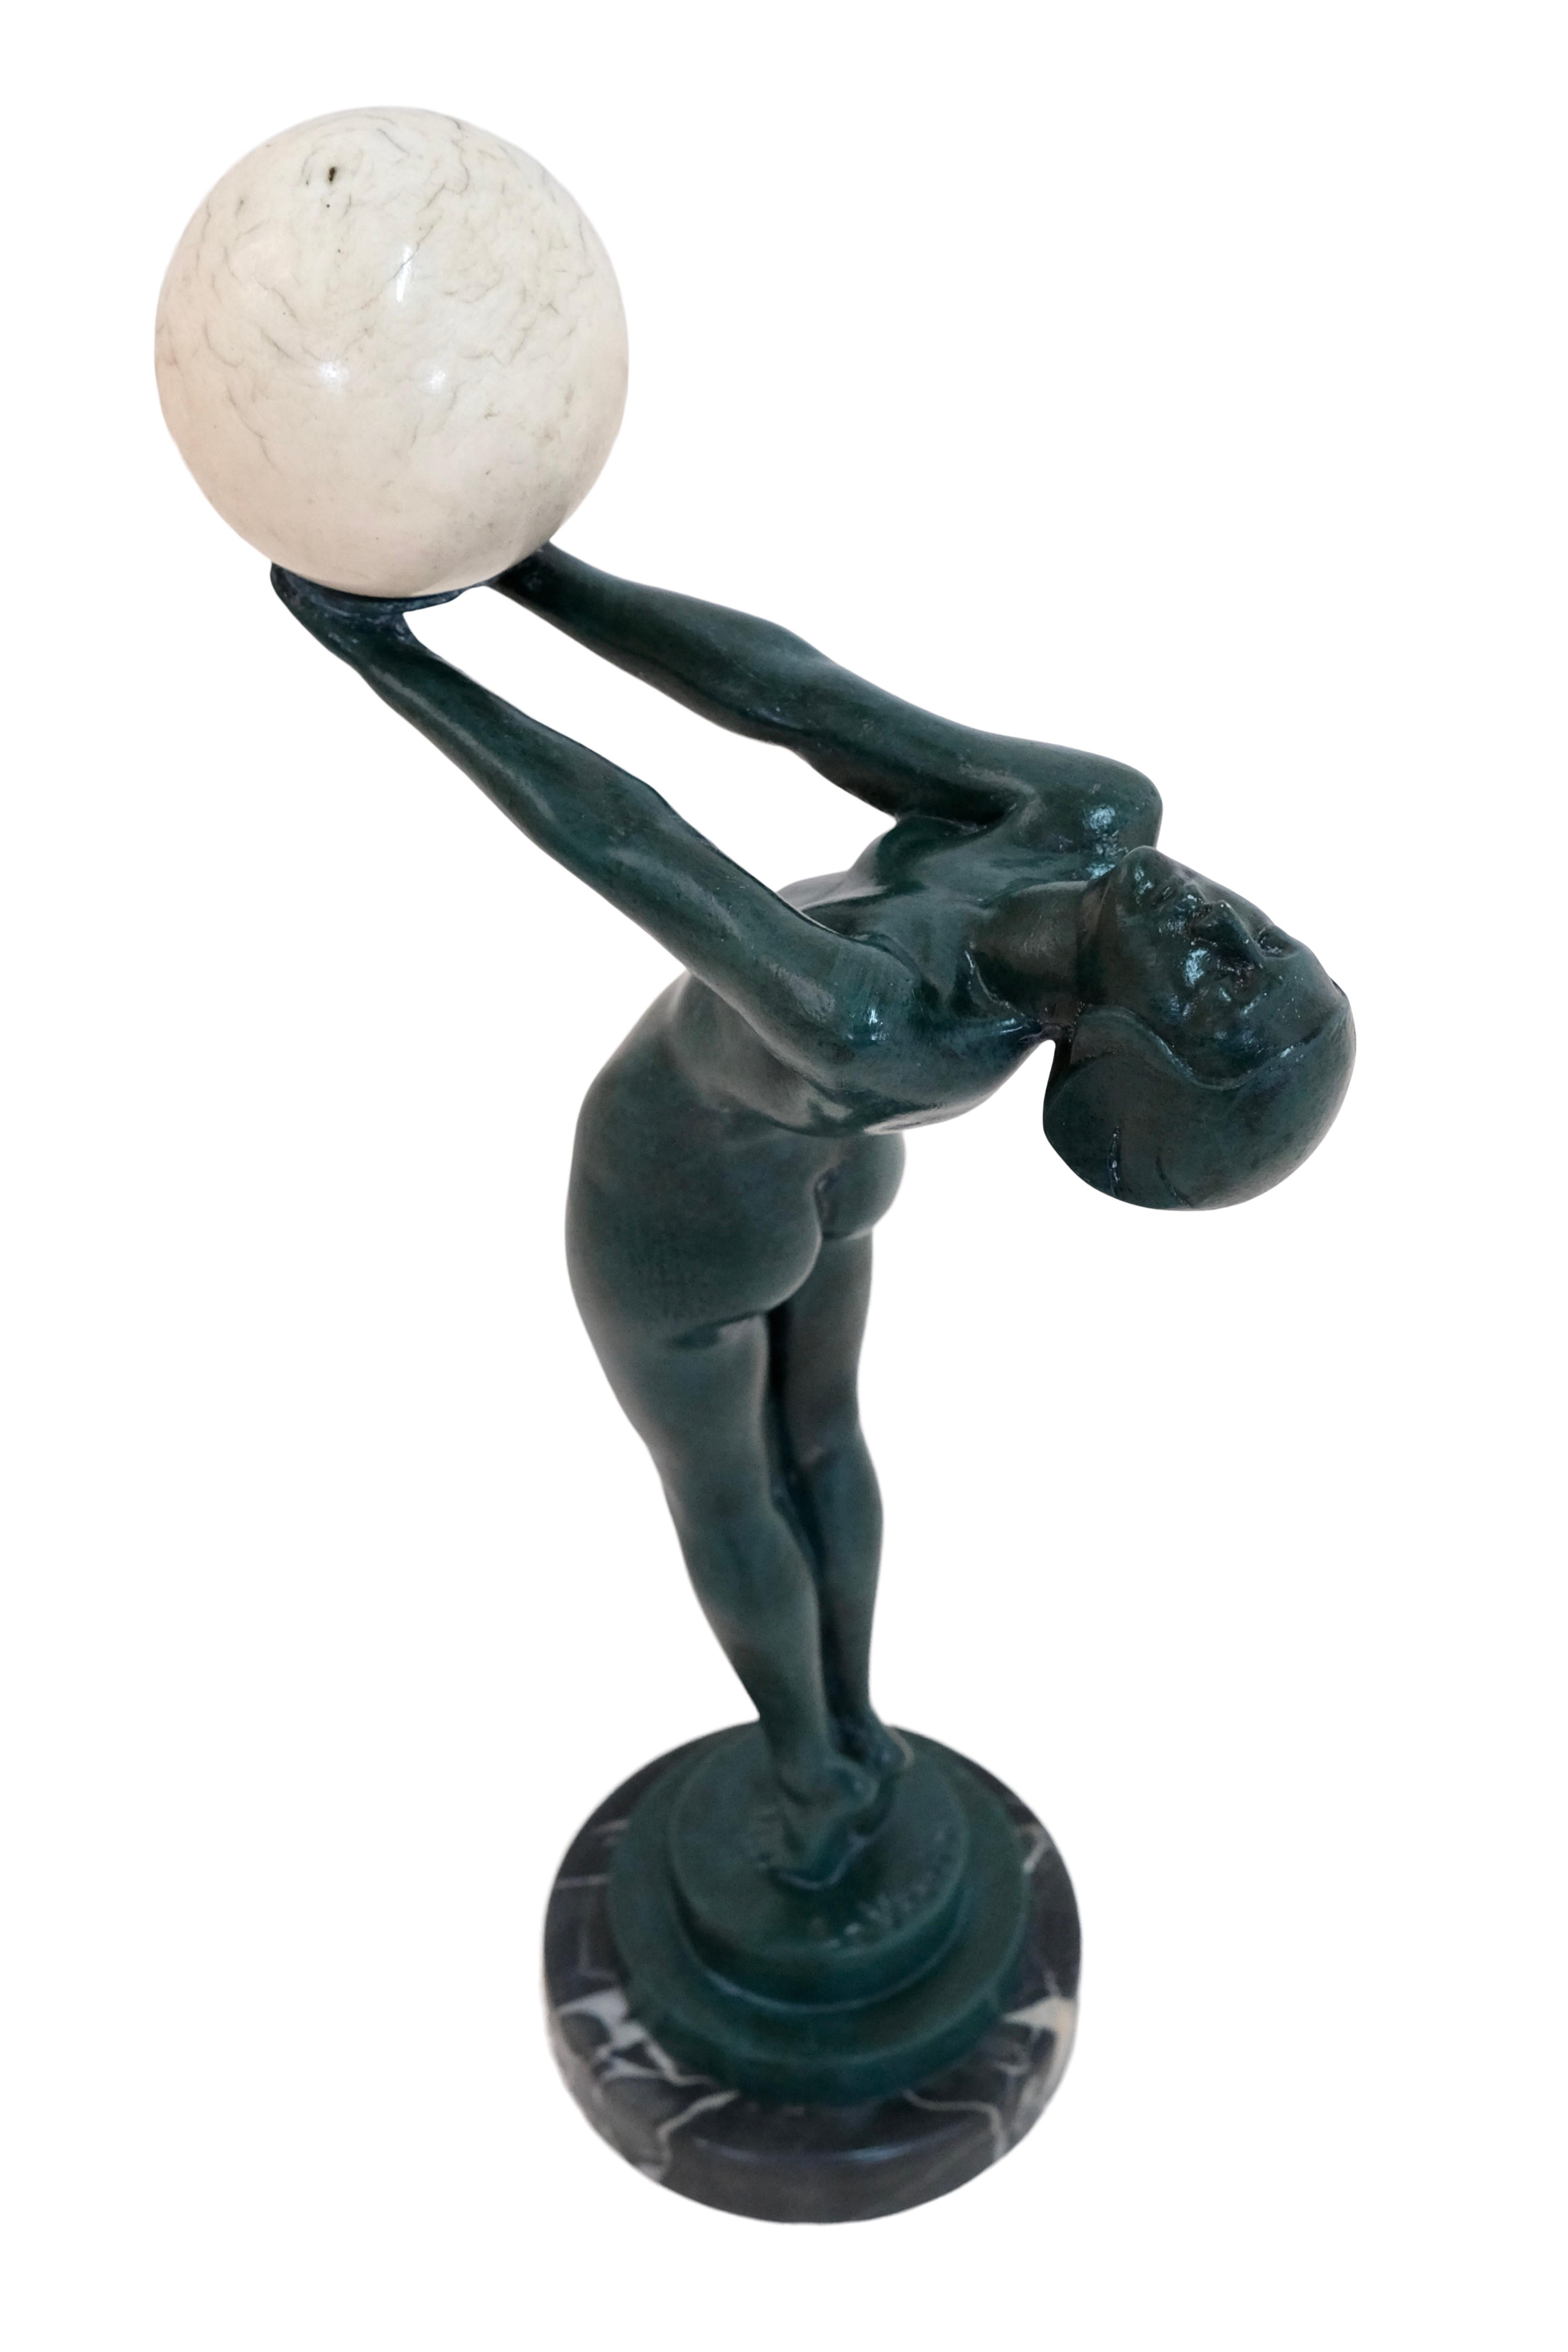 Patinated Vintage Art Deco Dancer Sculpture Lueur Clarté with Onyx Ball by Max Le Verrier For Sale